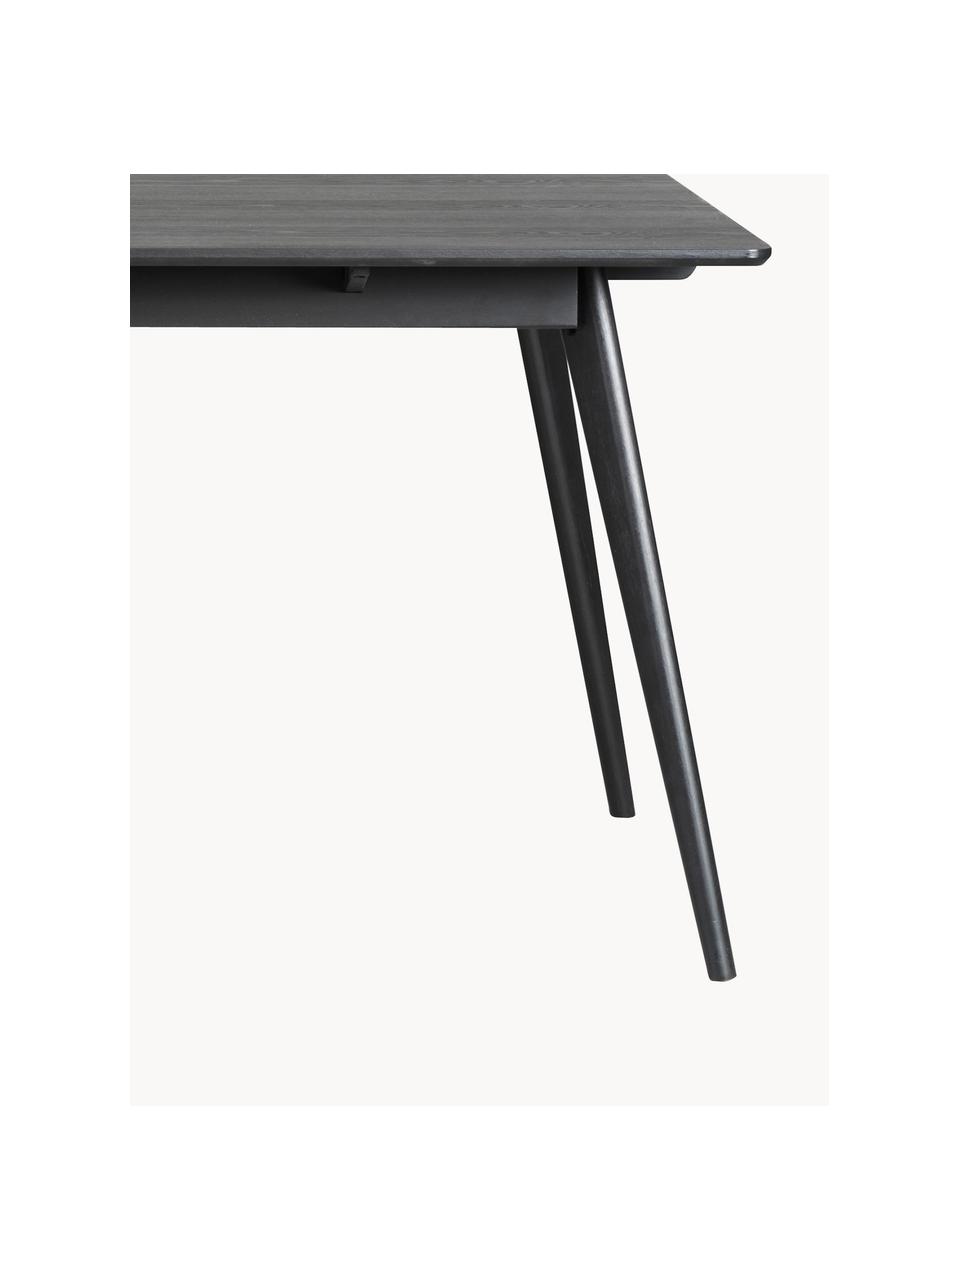 Jedálenský stôl Yumi, 190 x 90 cm, Dubové drevo, čierna lakovaná, Š 190 x H 90 cm